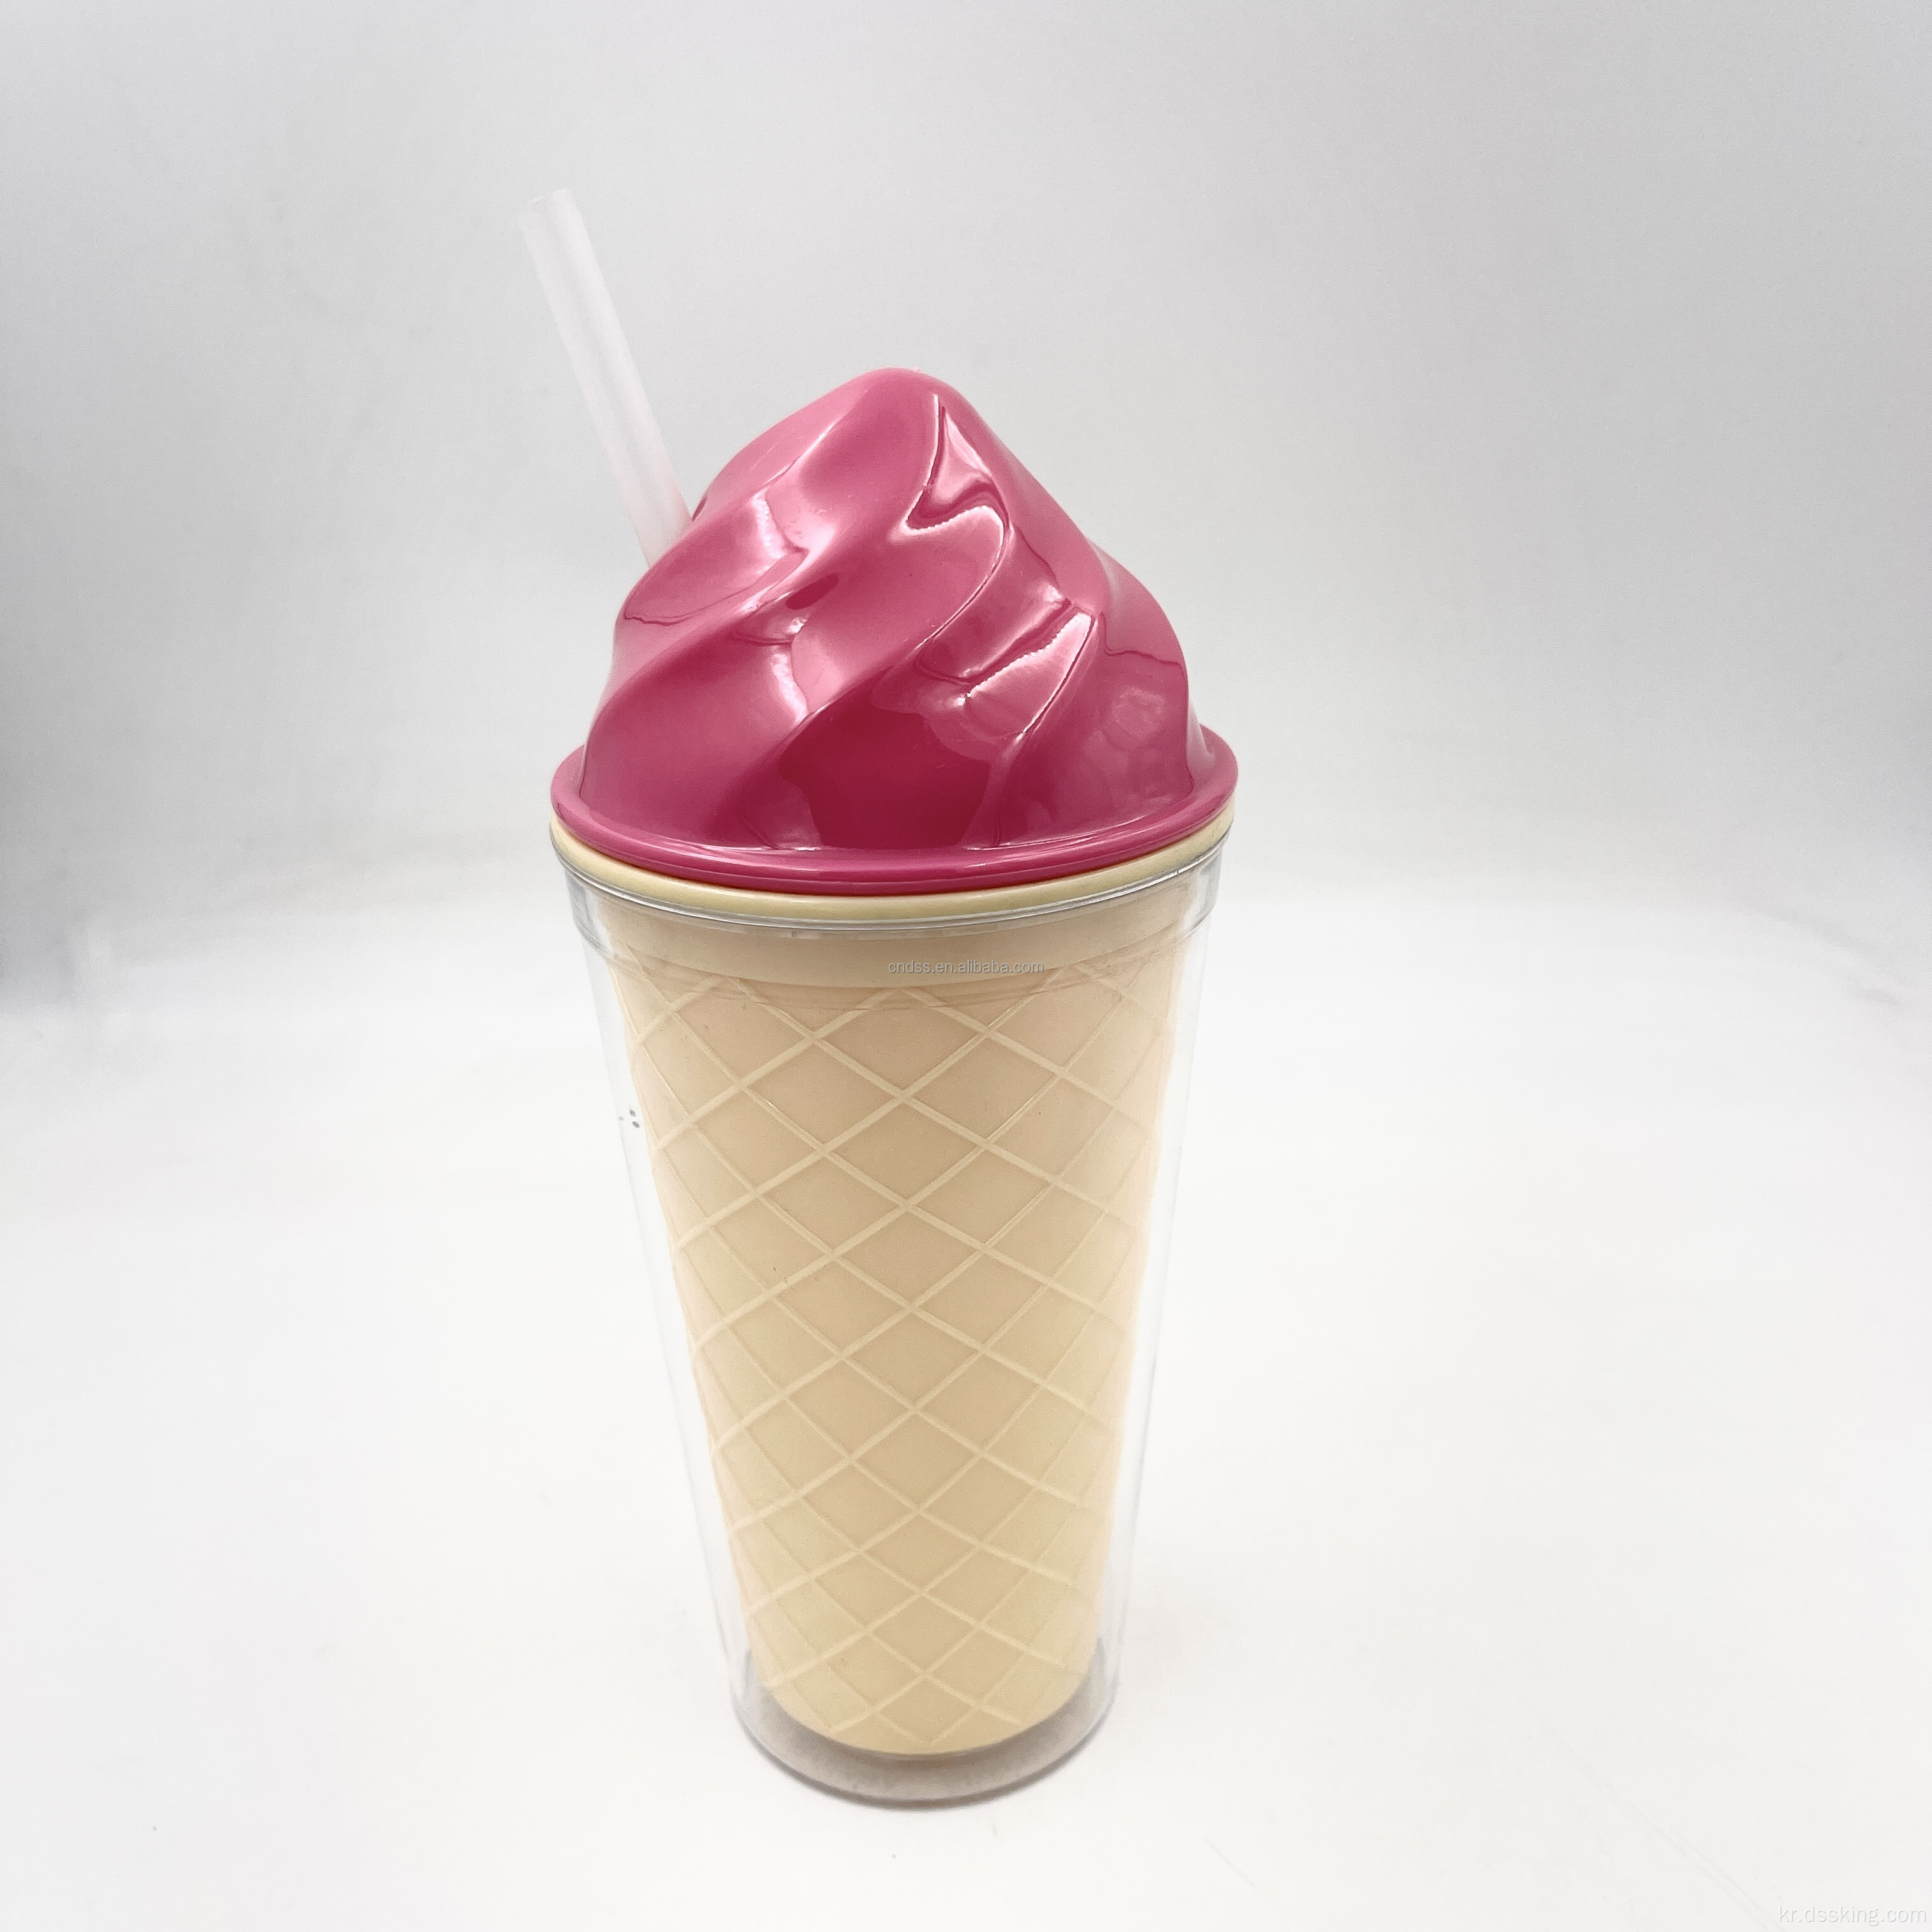 뜨거운 판매 제품 도매 16oz 재사용 가능한 더블 벽 커스텀 컬러 음료 아이스크림 플라스틱 컵 뚜껑